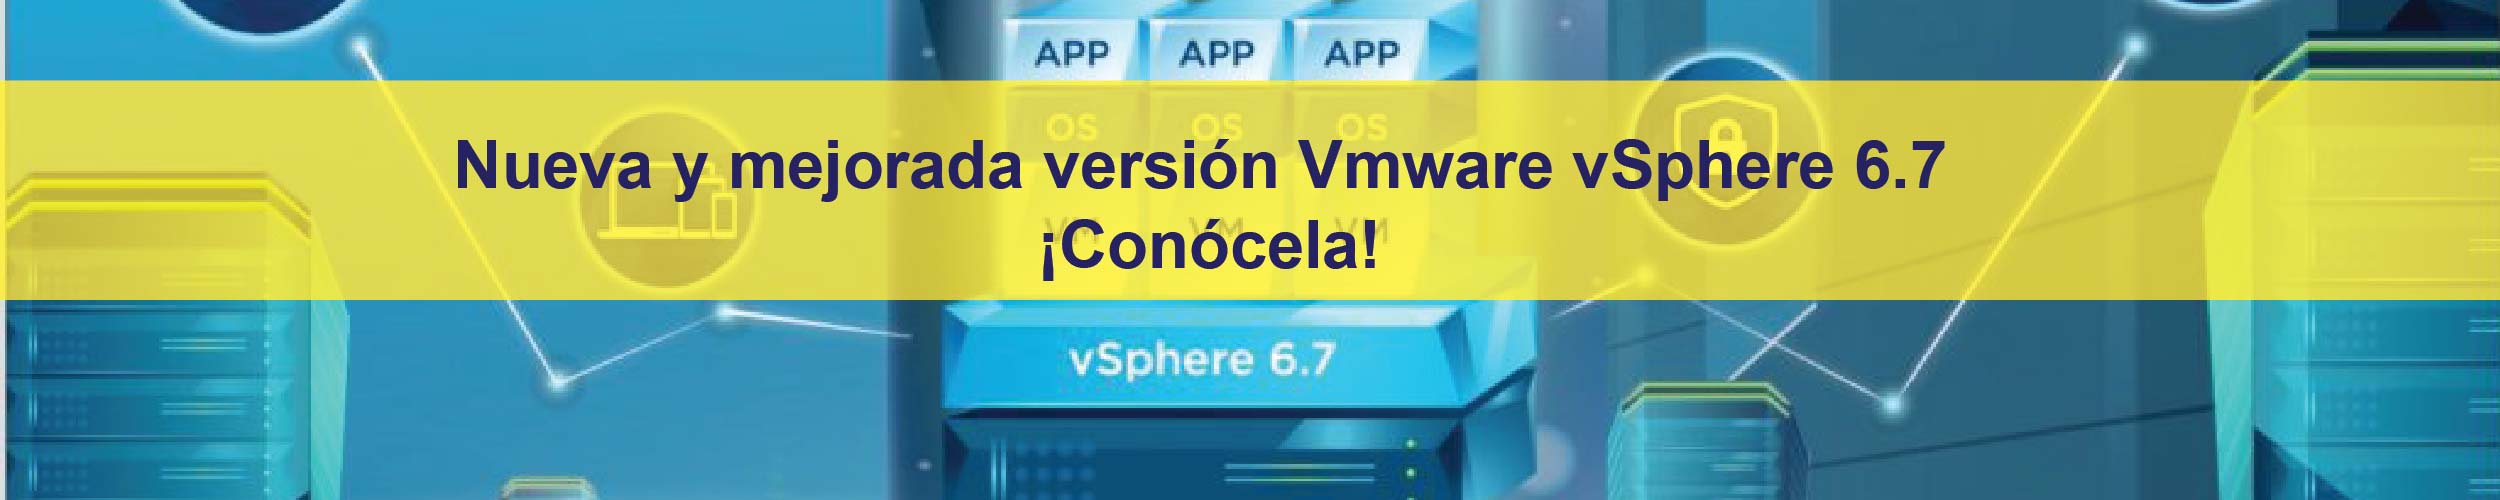 Nueva y mejorada versión Vmware vSphere 6.7 ¡Conócela!